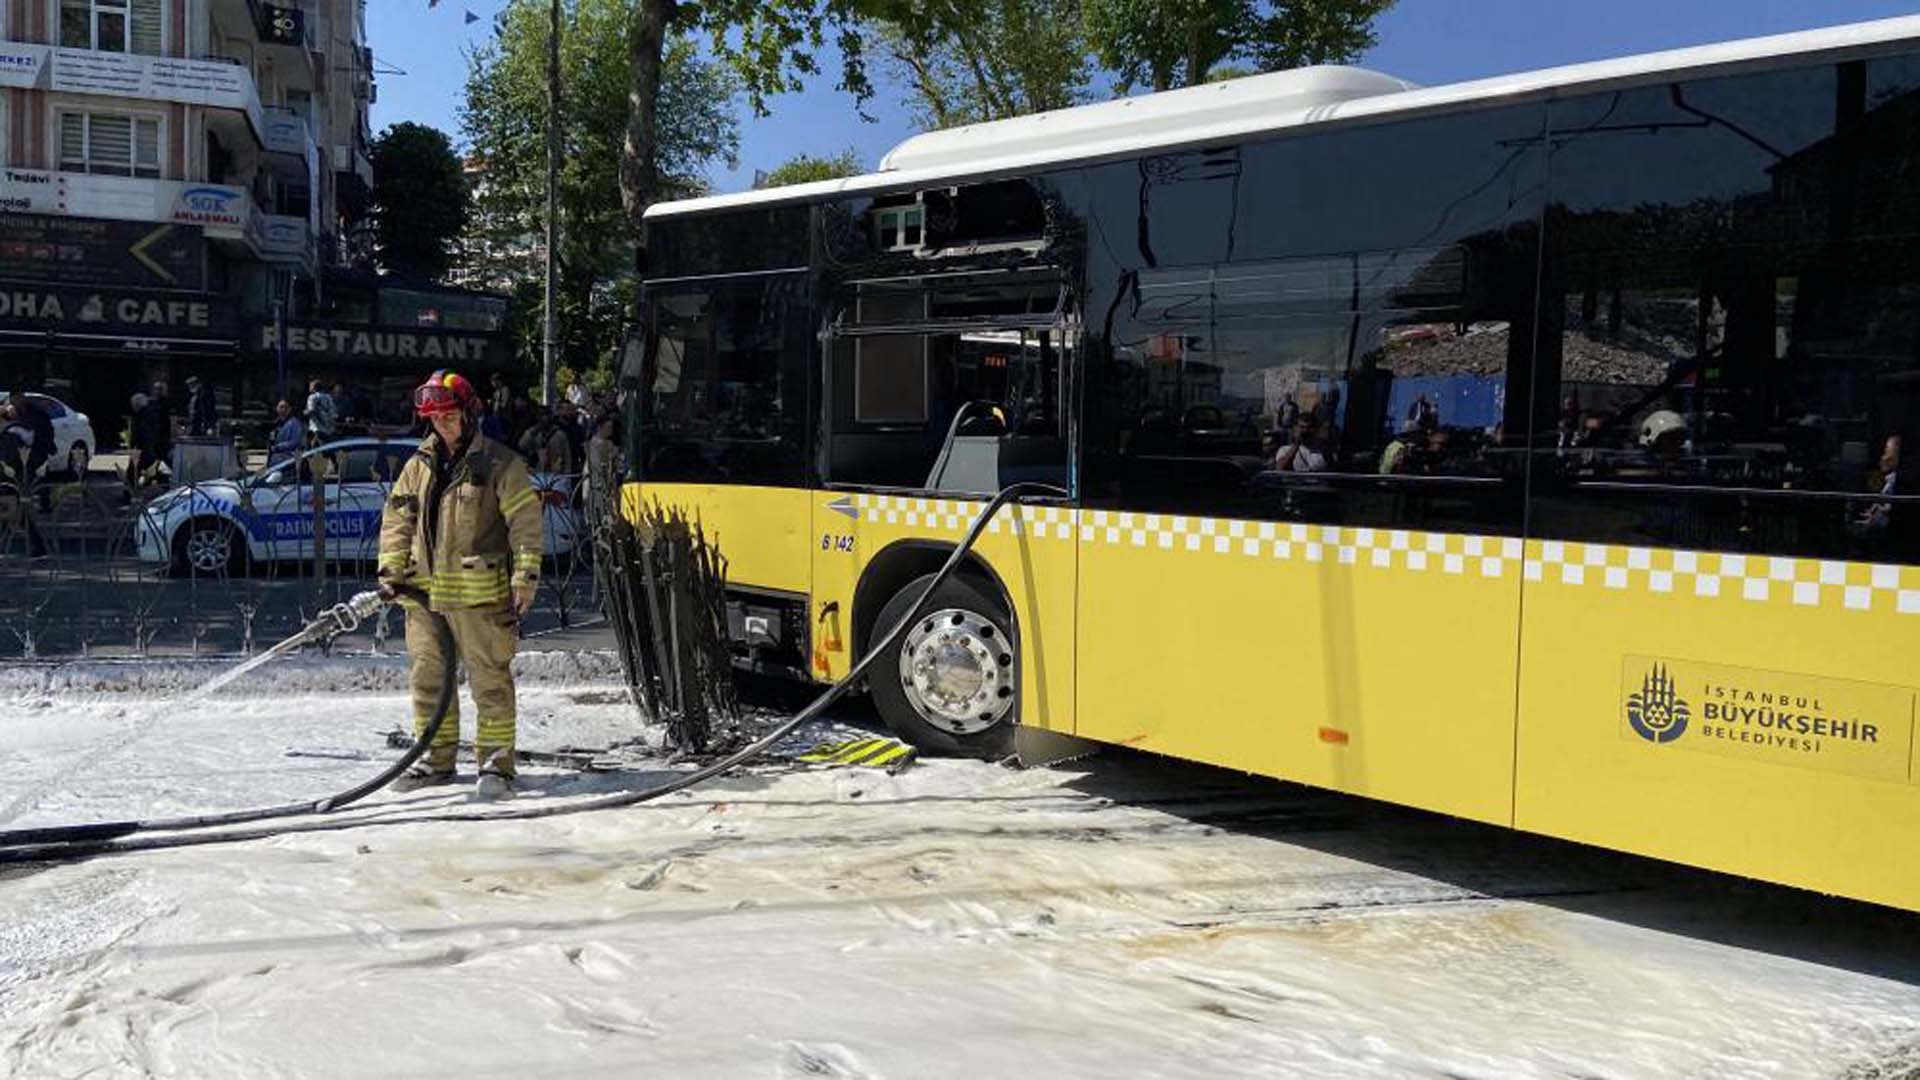 İstanbul Fatih'te tramvay ile İETT otobüsü çarpıştı! 6 kişi yaralı